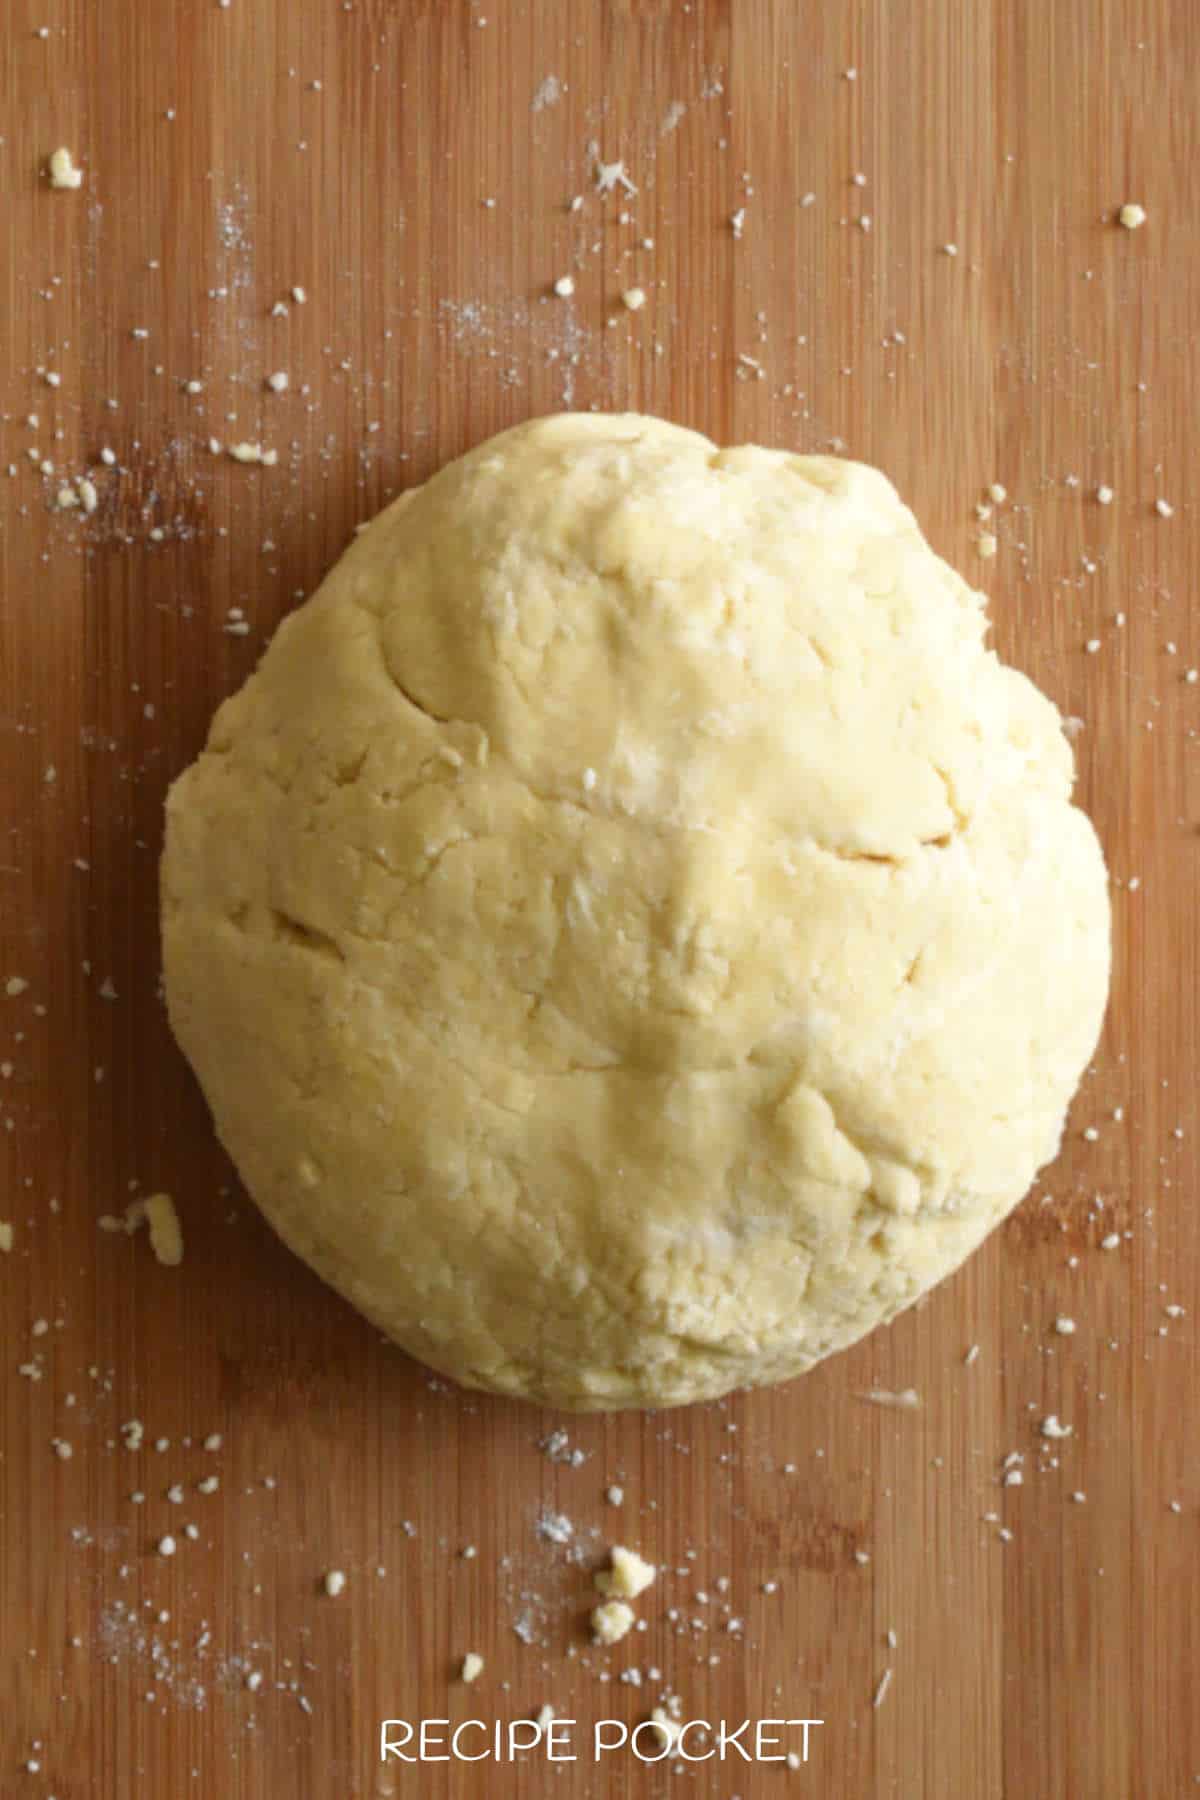 A ball of dough.